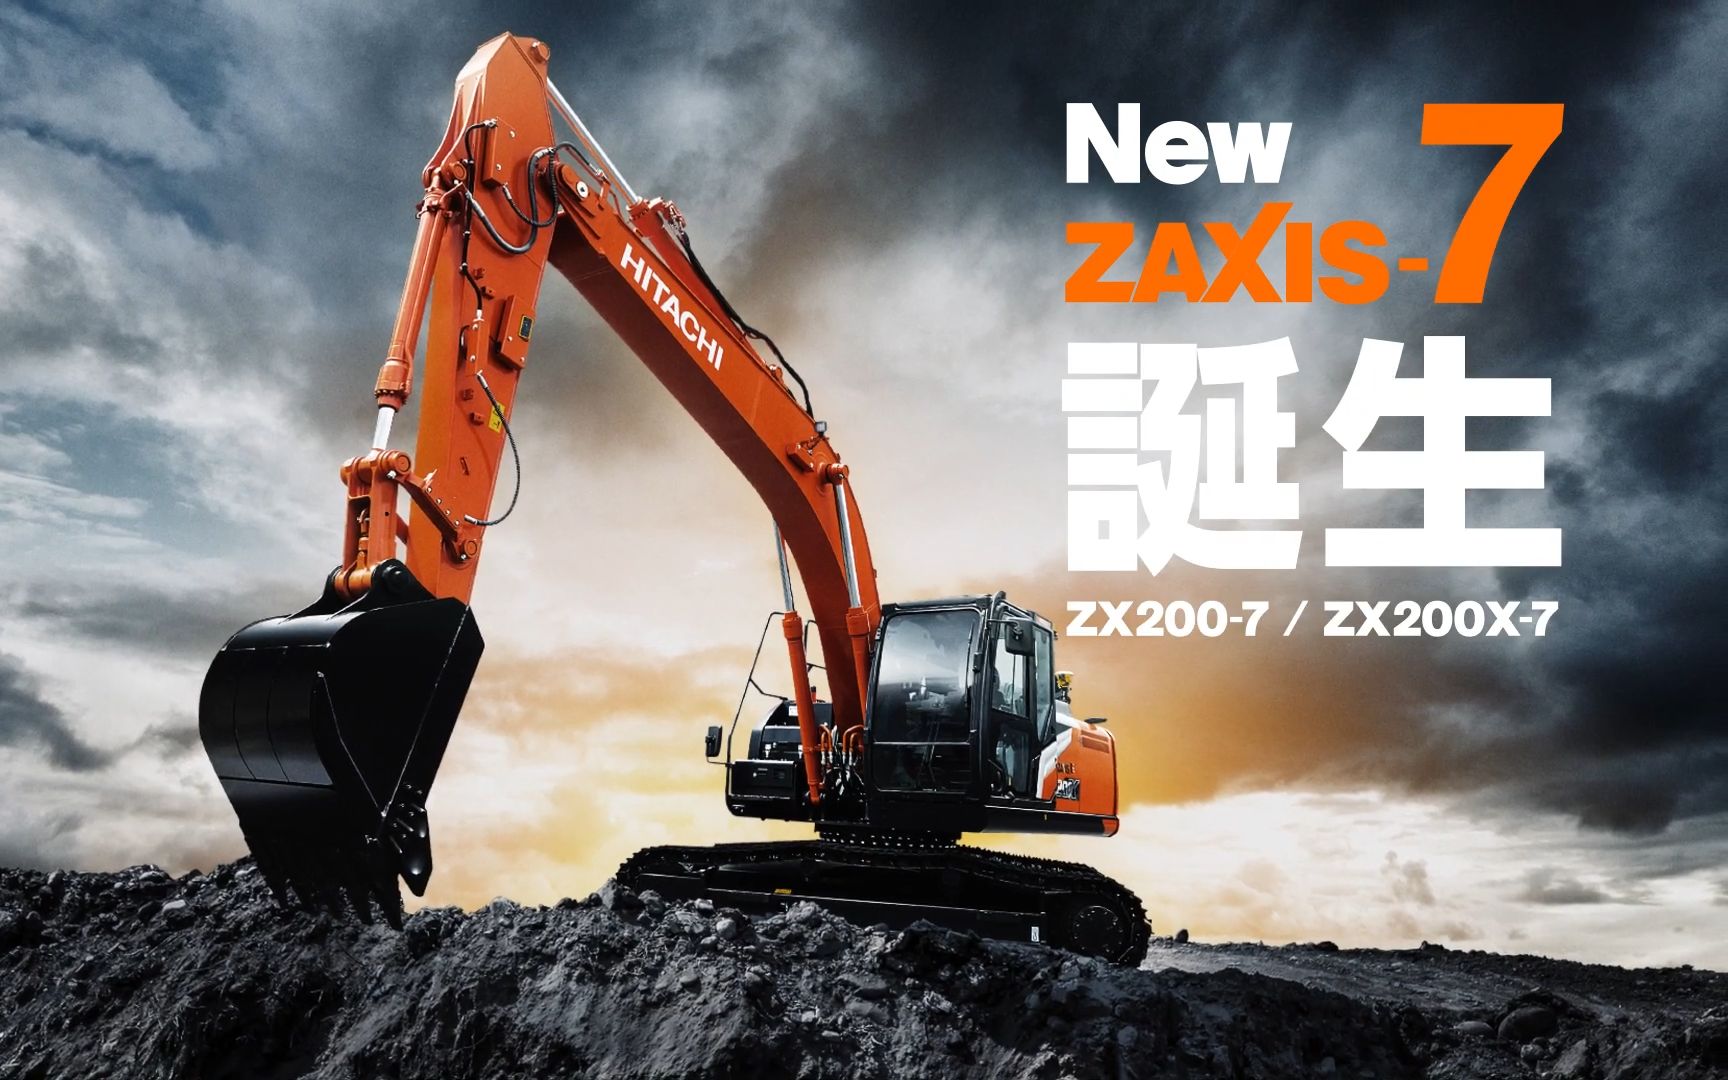 日立Hitachi ZX200-7 / ZX200X-7 New ZAXIS-7 誕生-哔哩哔哩